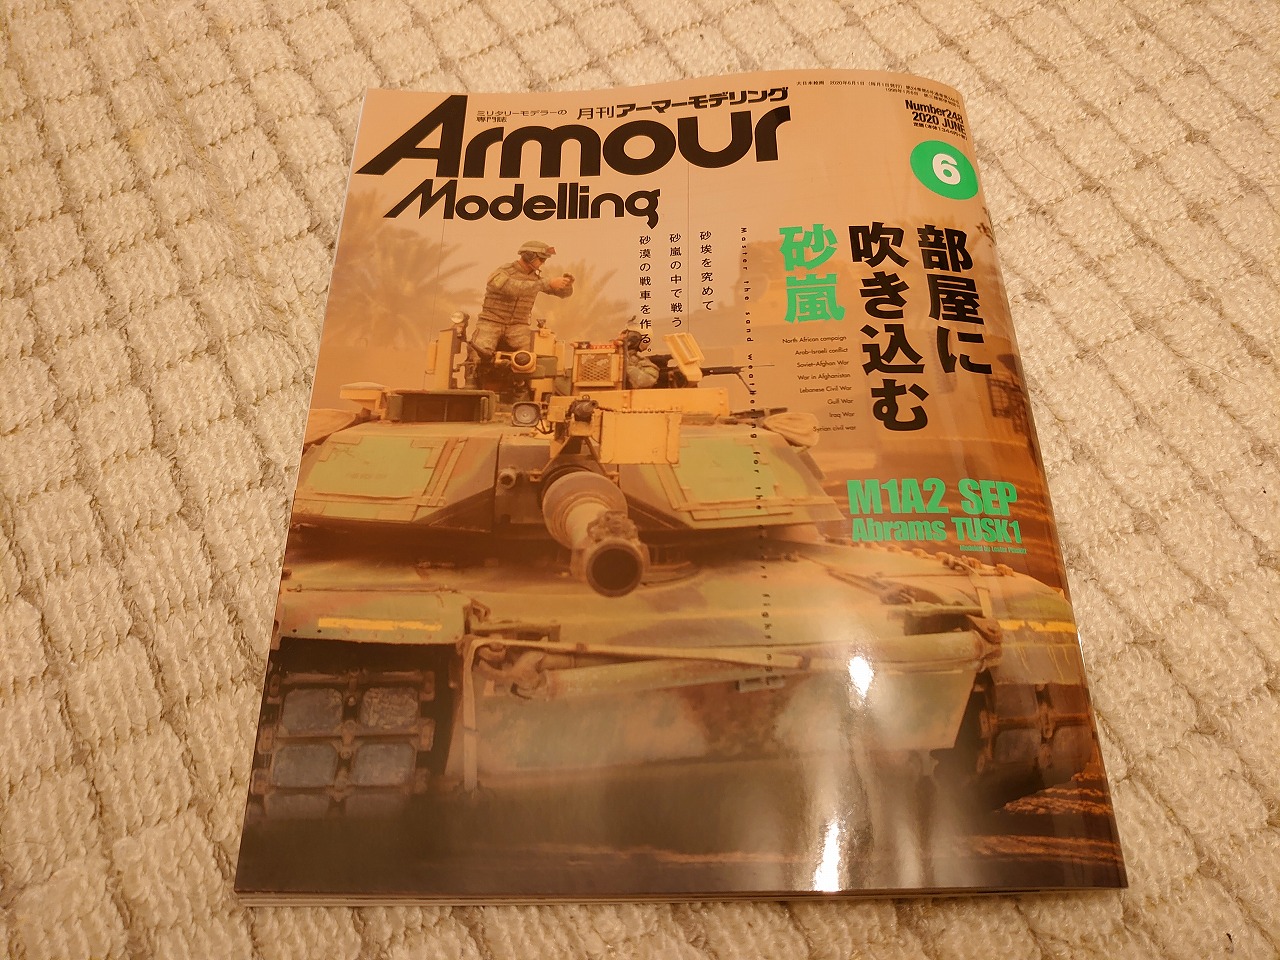 【最近購入した物】Armour Modelling 2020年 06 月号・カメラモジュールなど